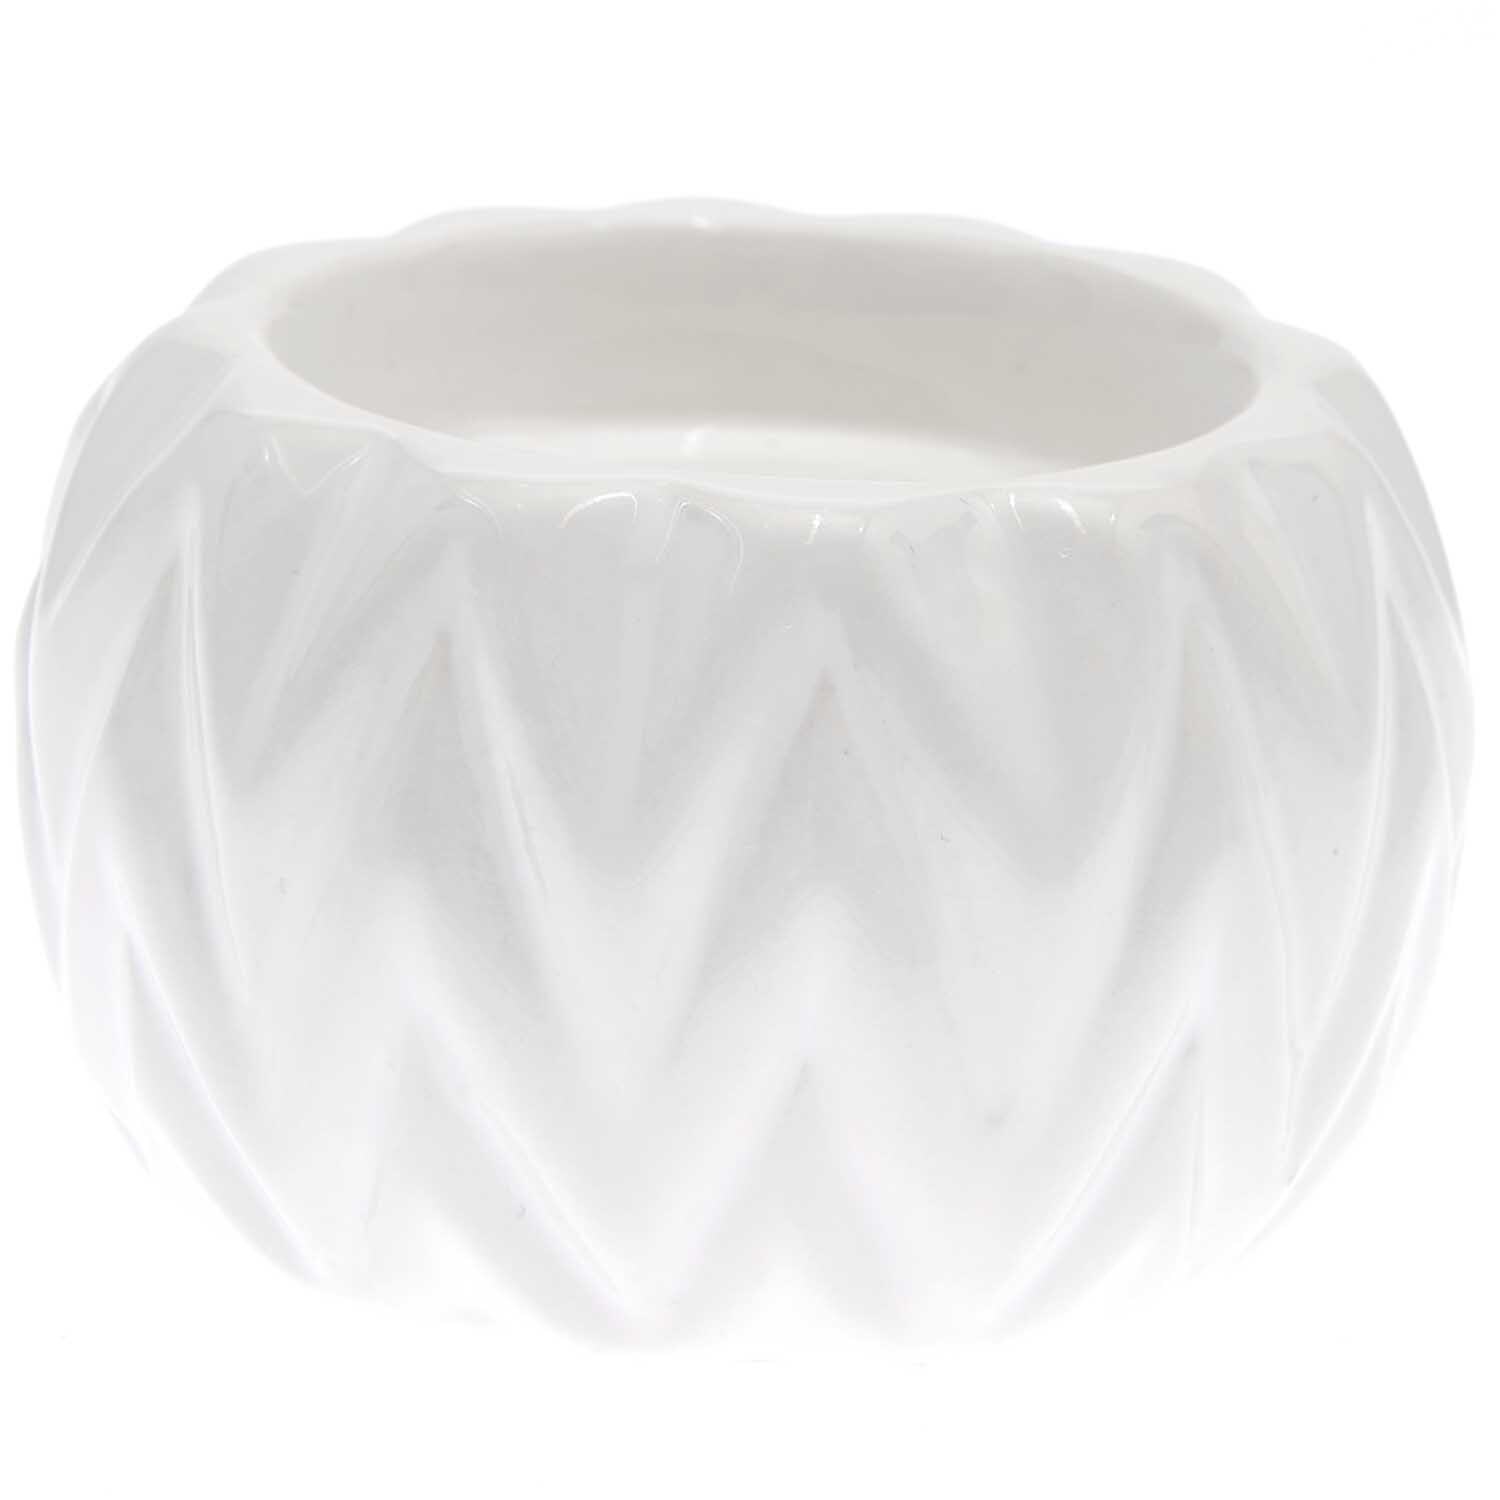 Porzellan-Teelichthalter weiß 9x9x5,5cm